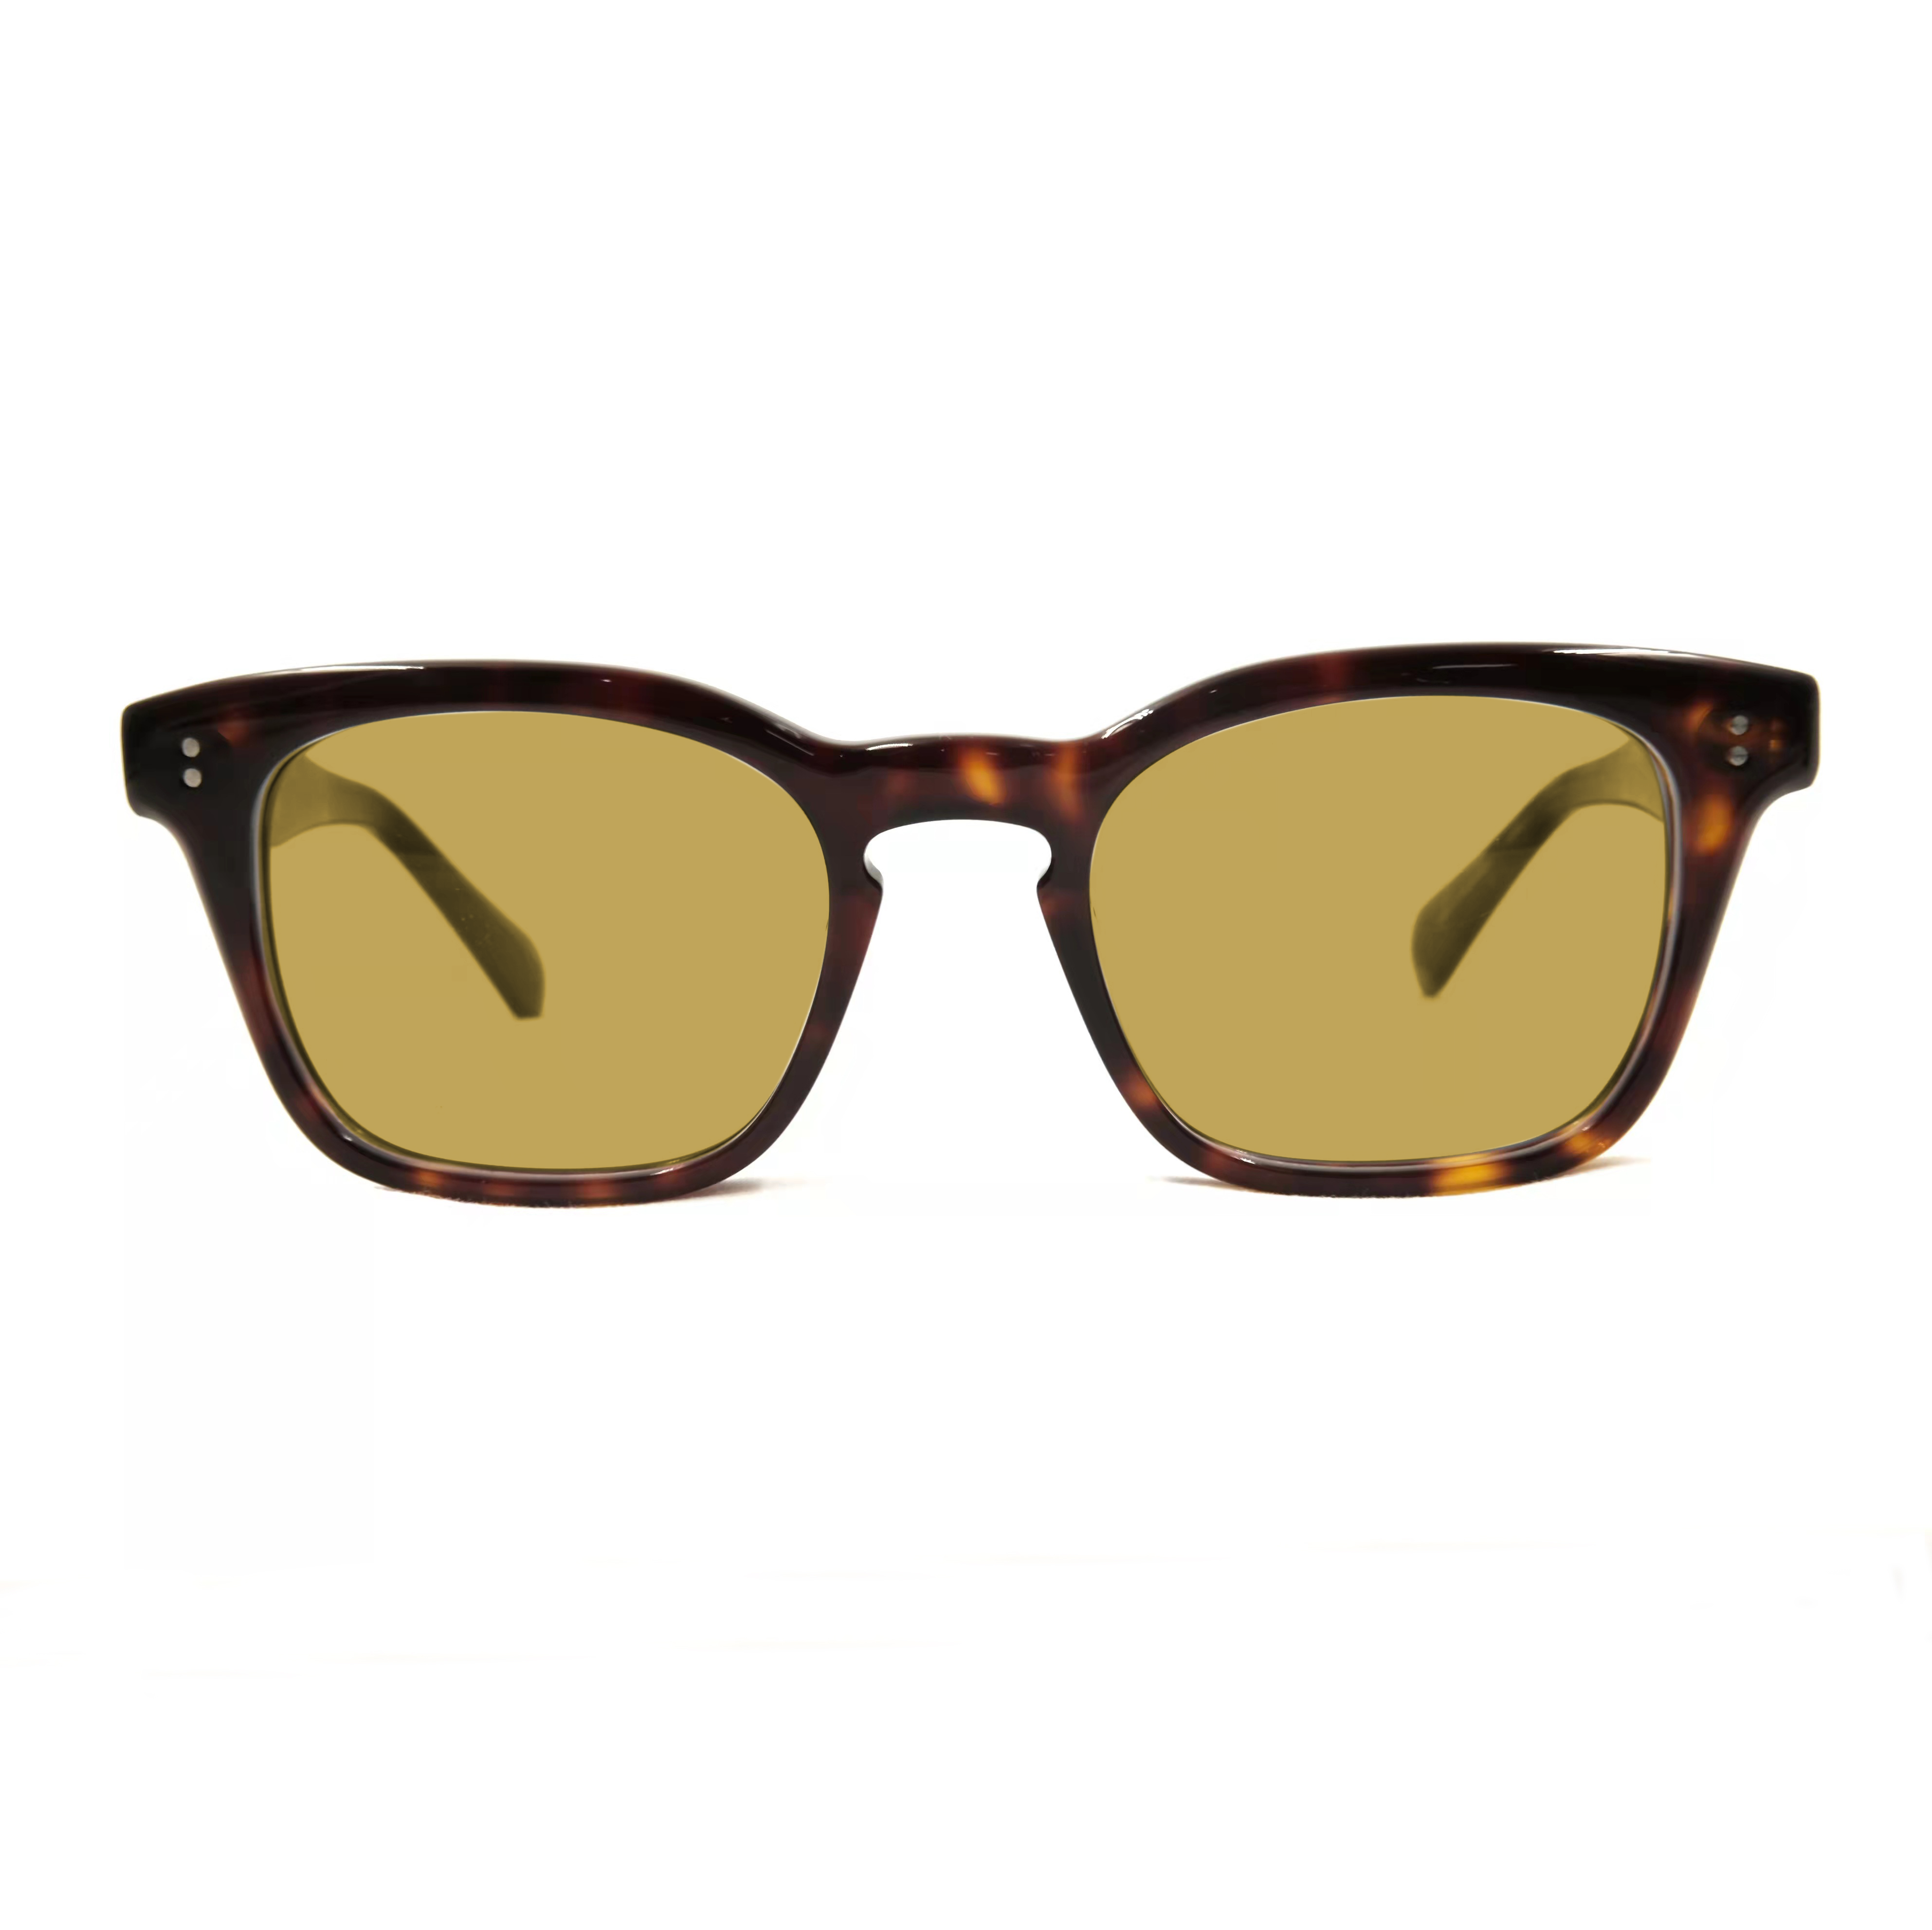 Gafas de sol con montura cuadrada de gran tamaño con montura de acetato Gafas de sol polarizadas personalizadas Los mejores fabricantes de gafas